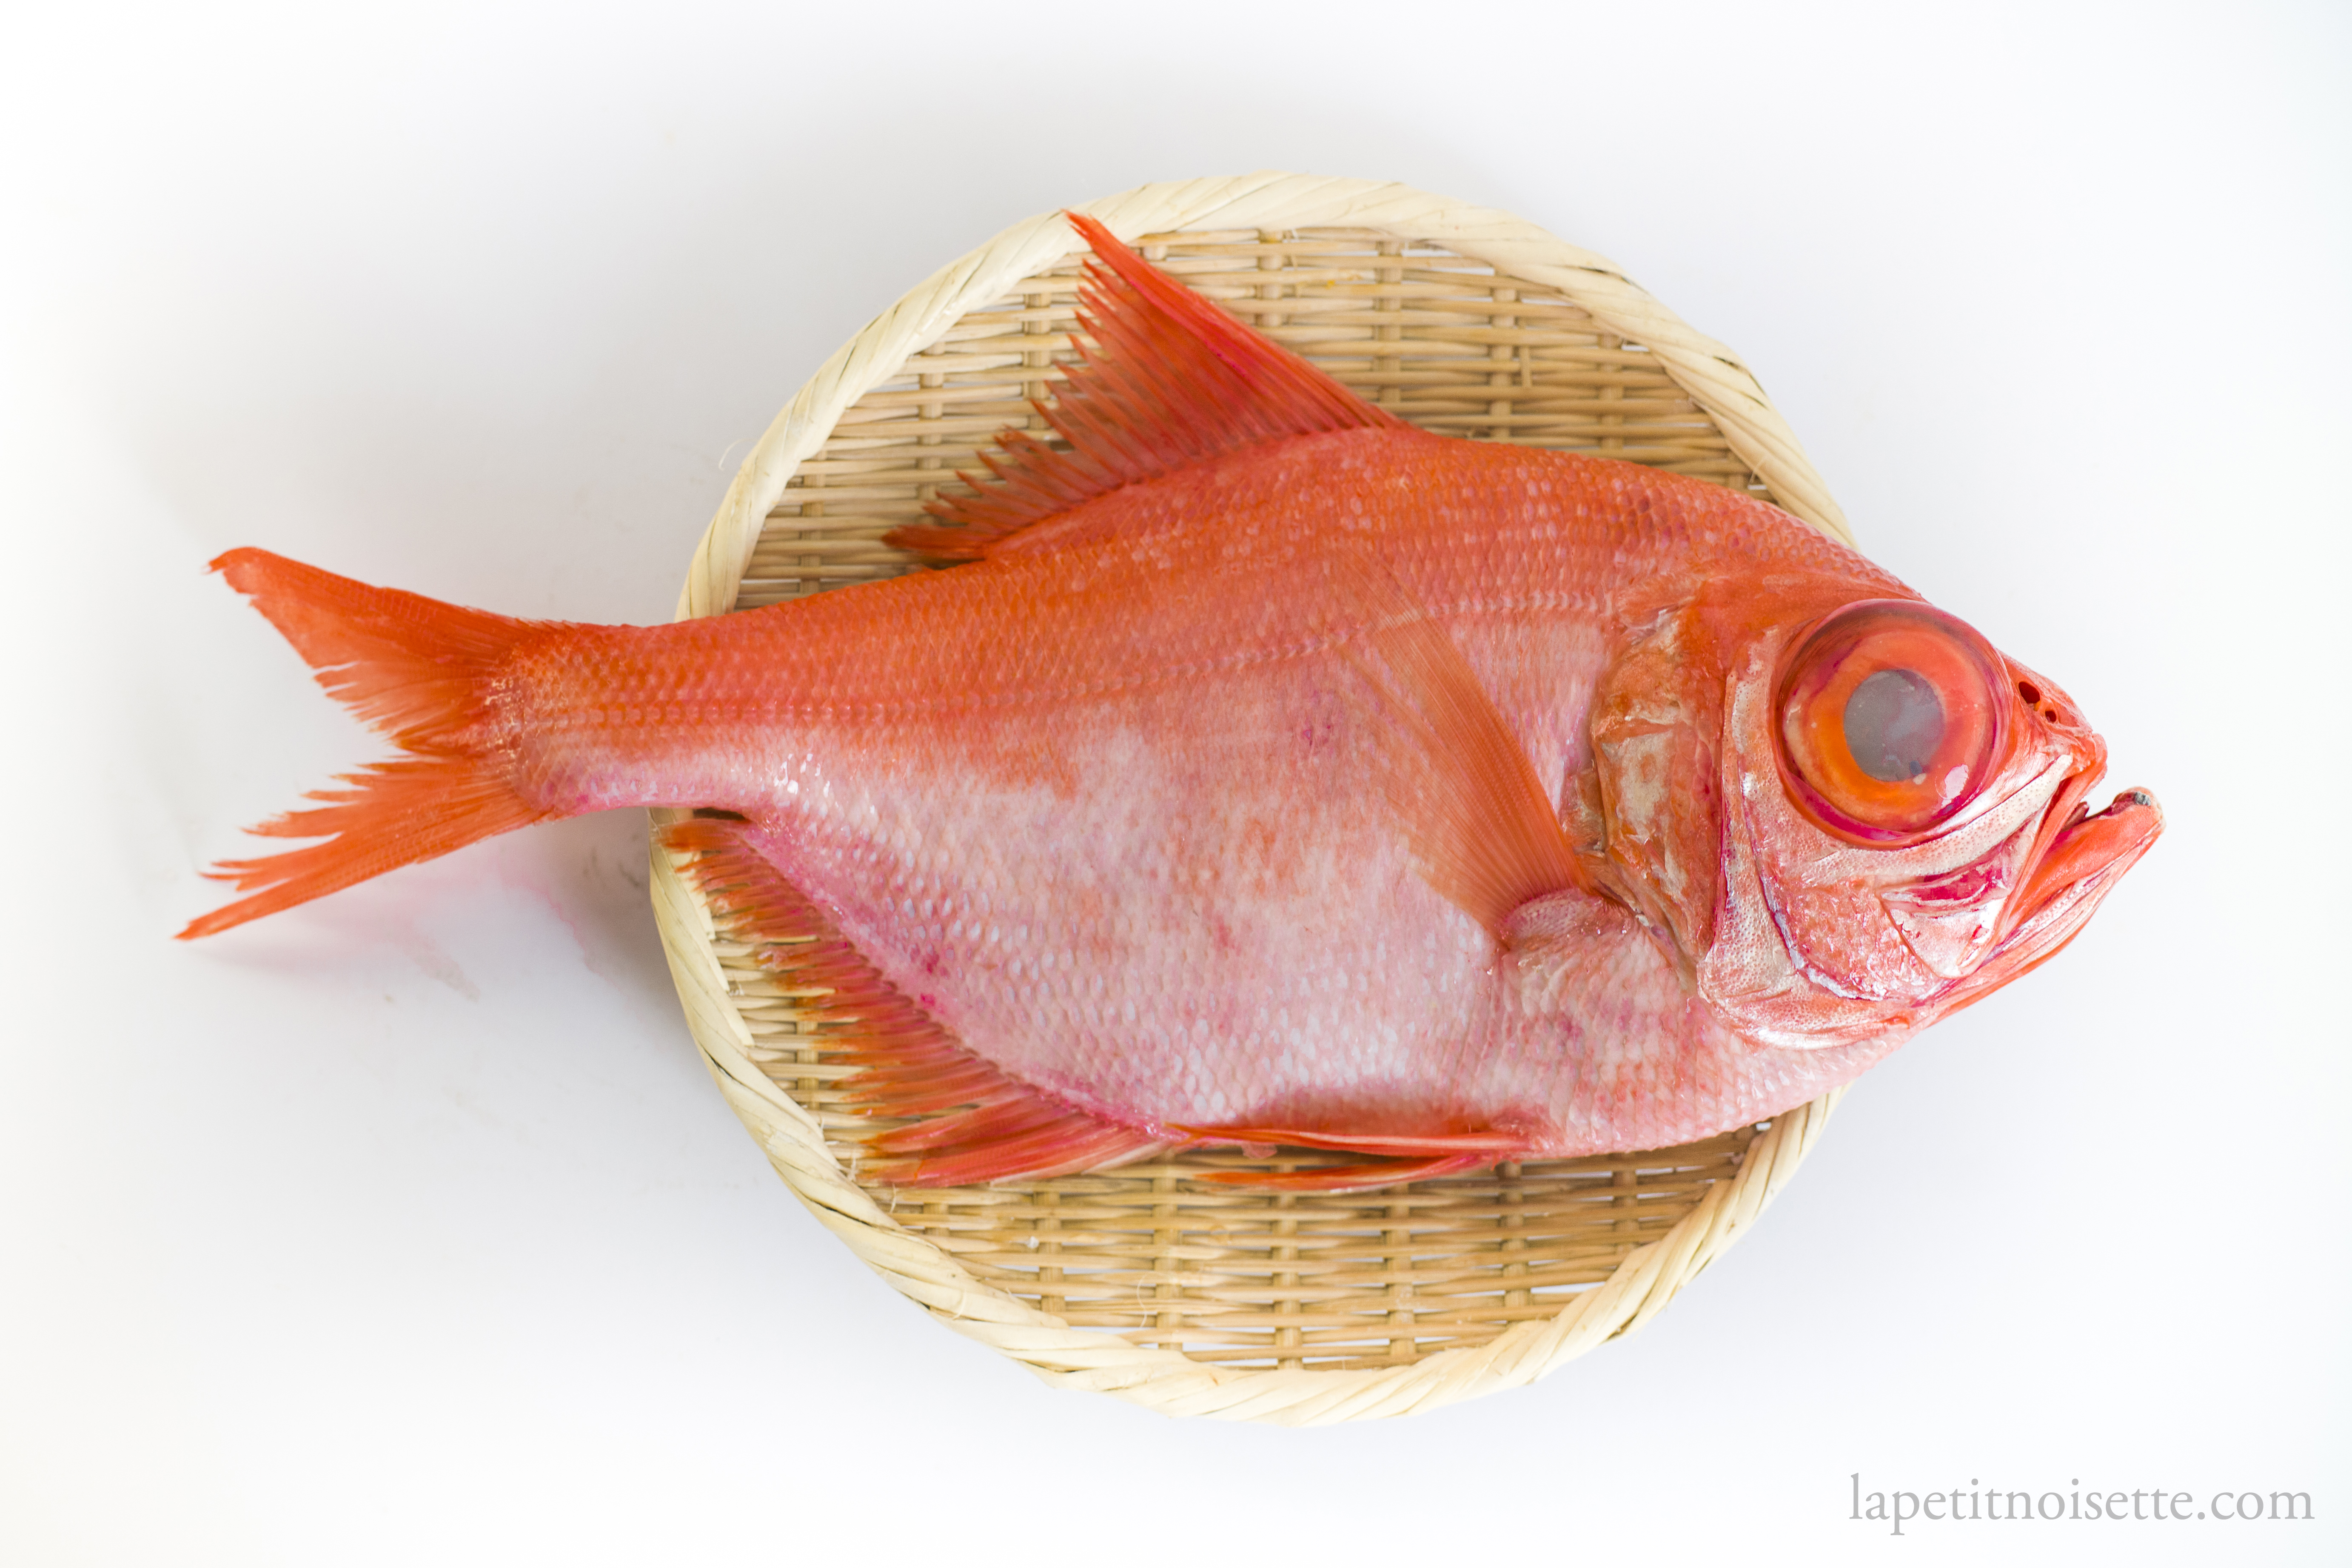 A Japanese Nanyo Kinmedai fish